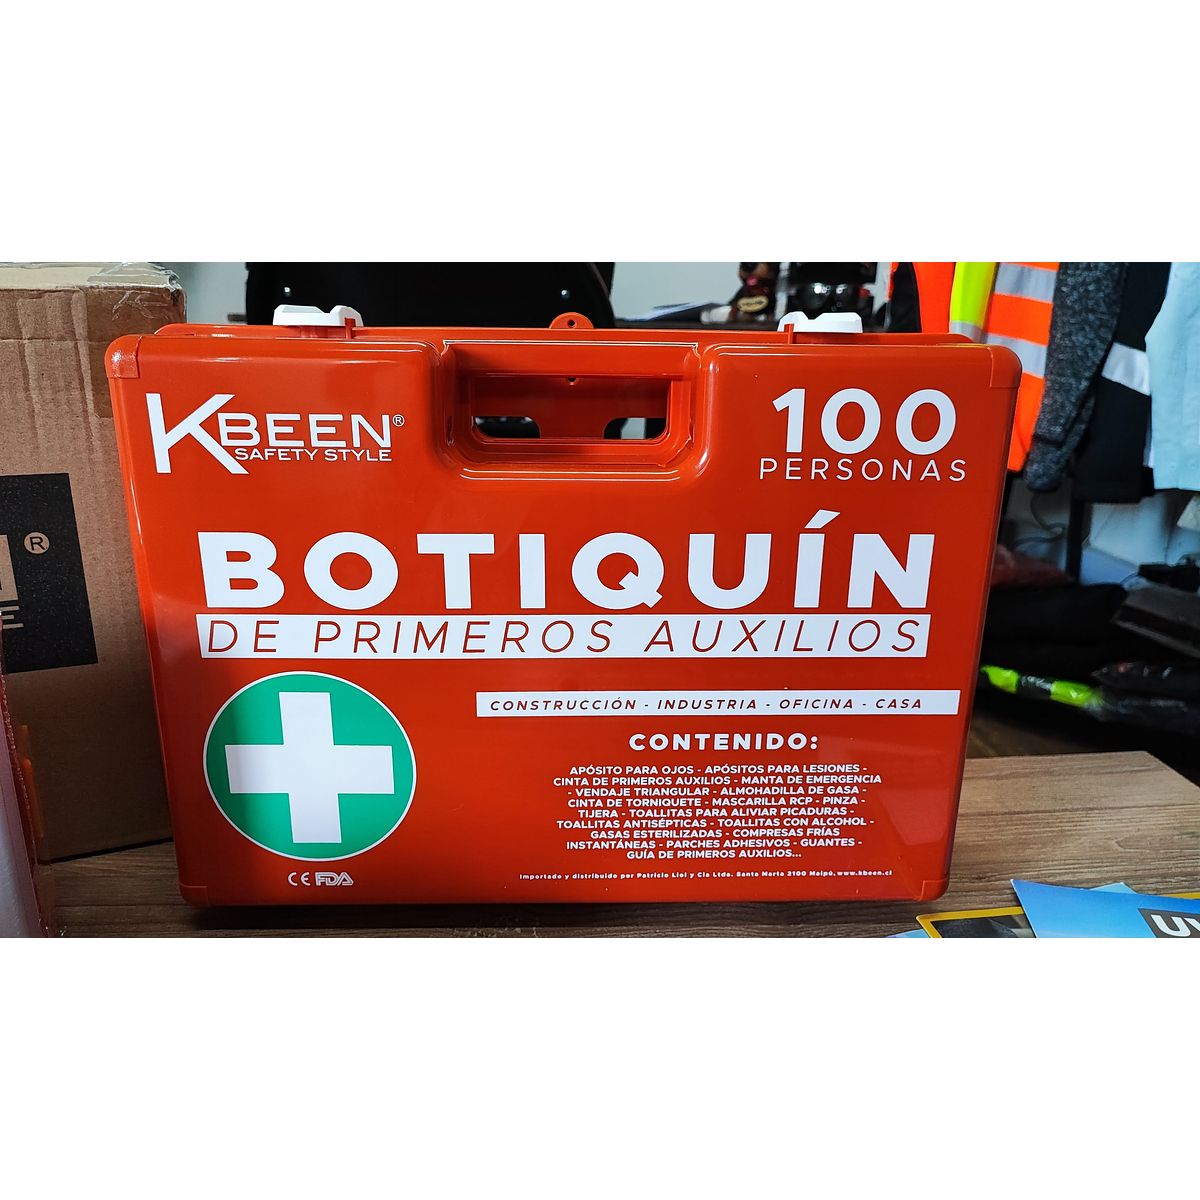 Botiquín Primeros Auxilios 100 Personas Kbeen